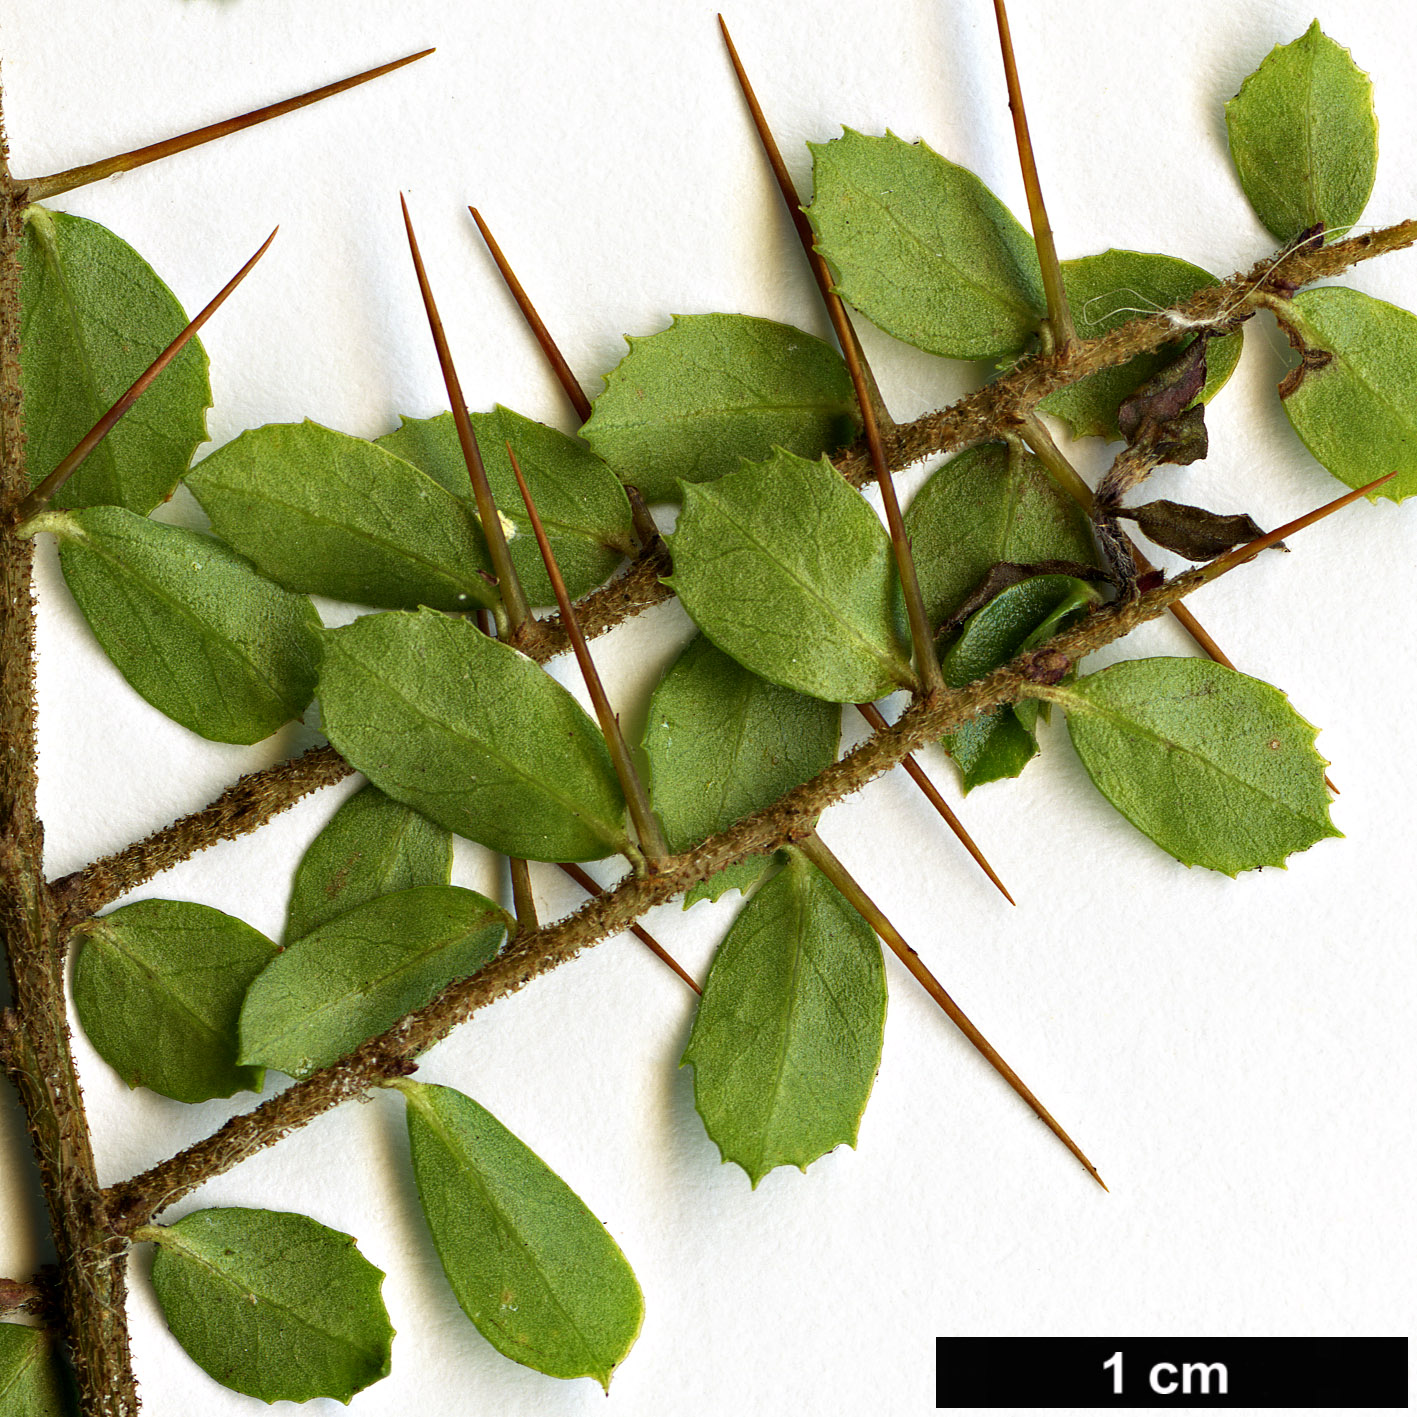 High resolution image: Family: Pittosporaceae - Genus: Pittosporum - Taxon: multiflorum